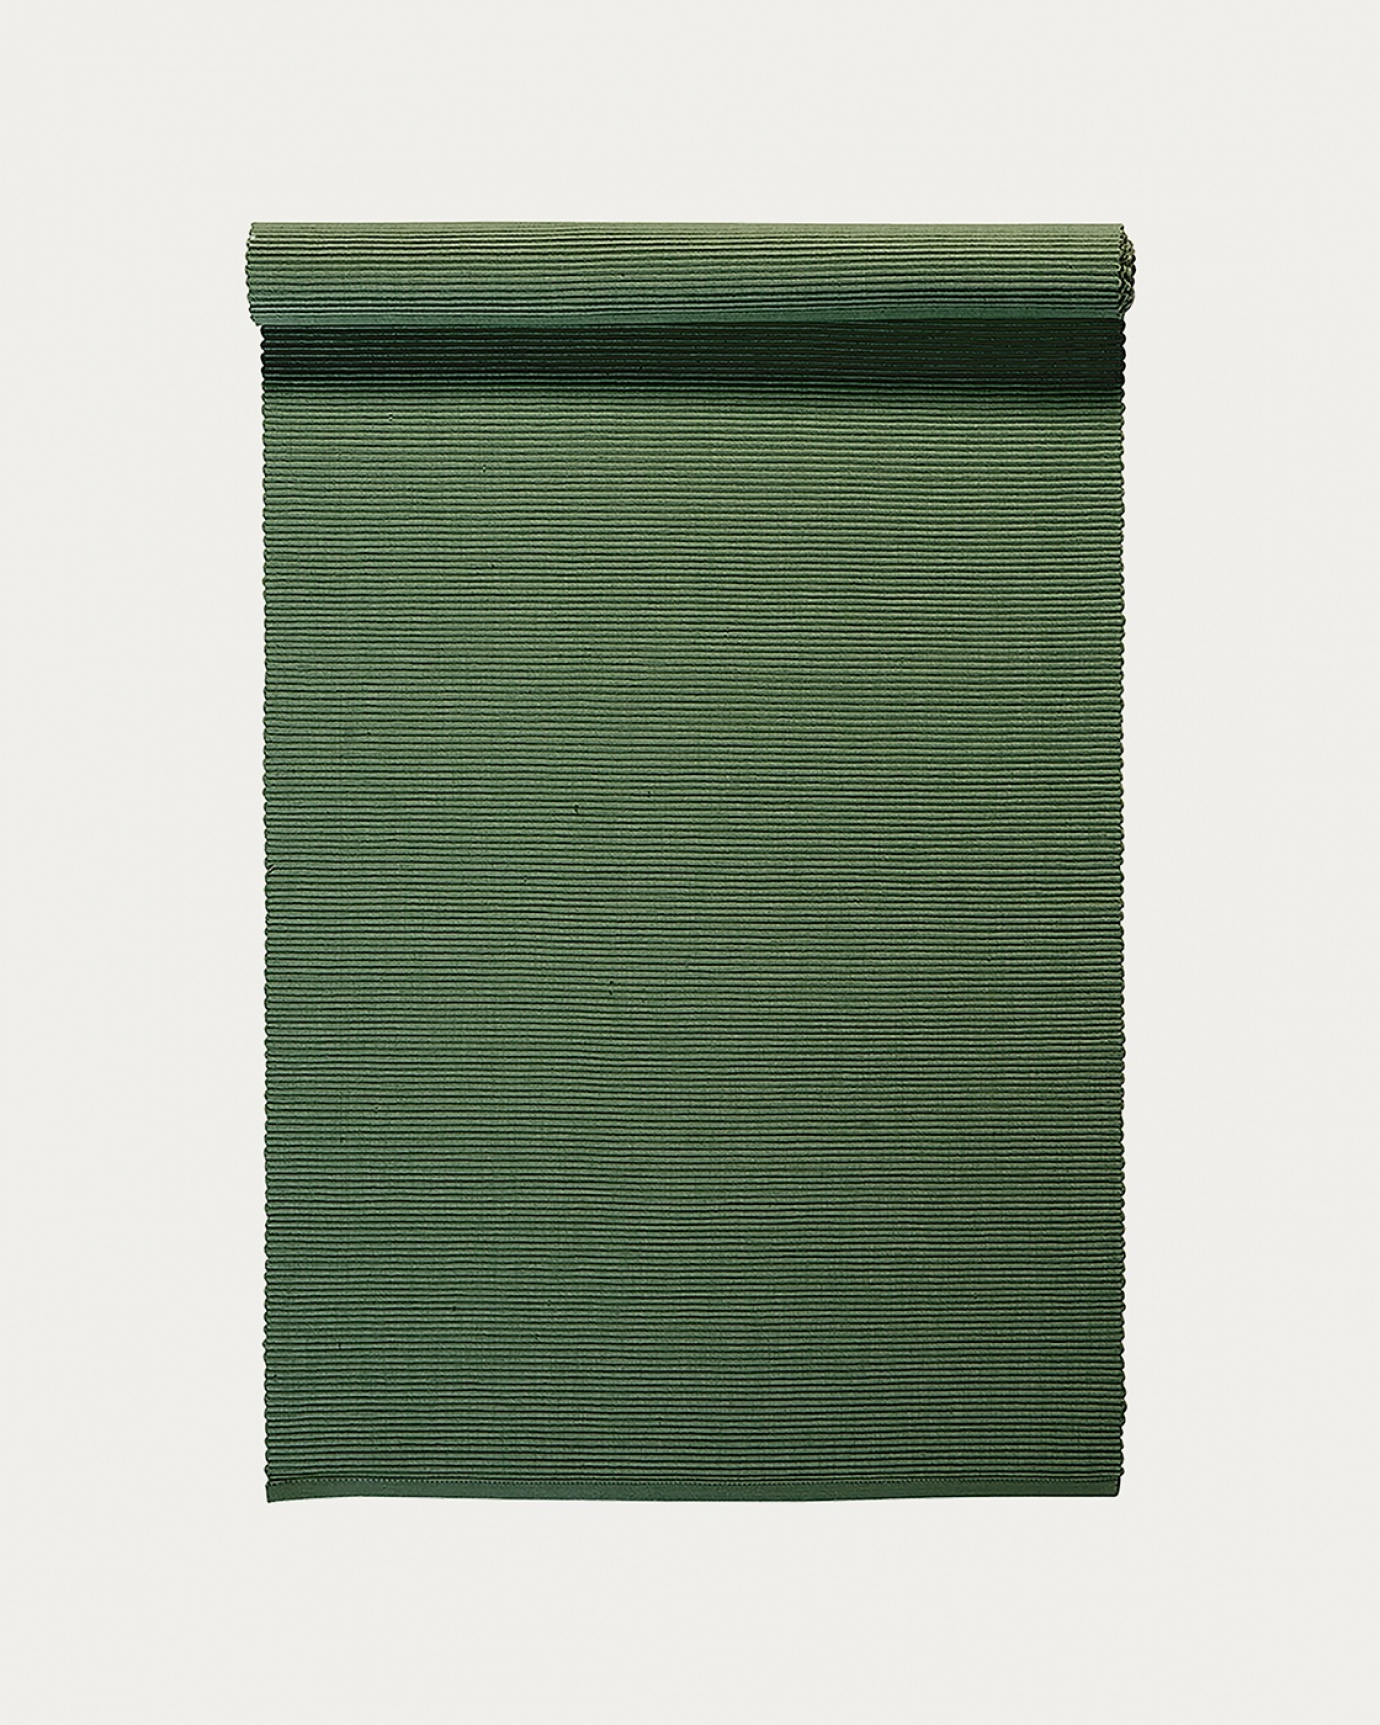 Produktbild olivgrün UNI Tischläufer aus weicher Baumwolle in Rippenqualität von LINUM DESIGN. Größe 45x150 cm.